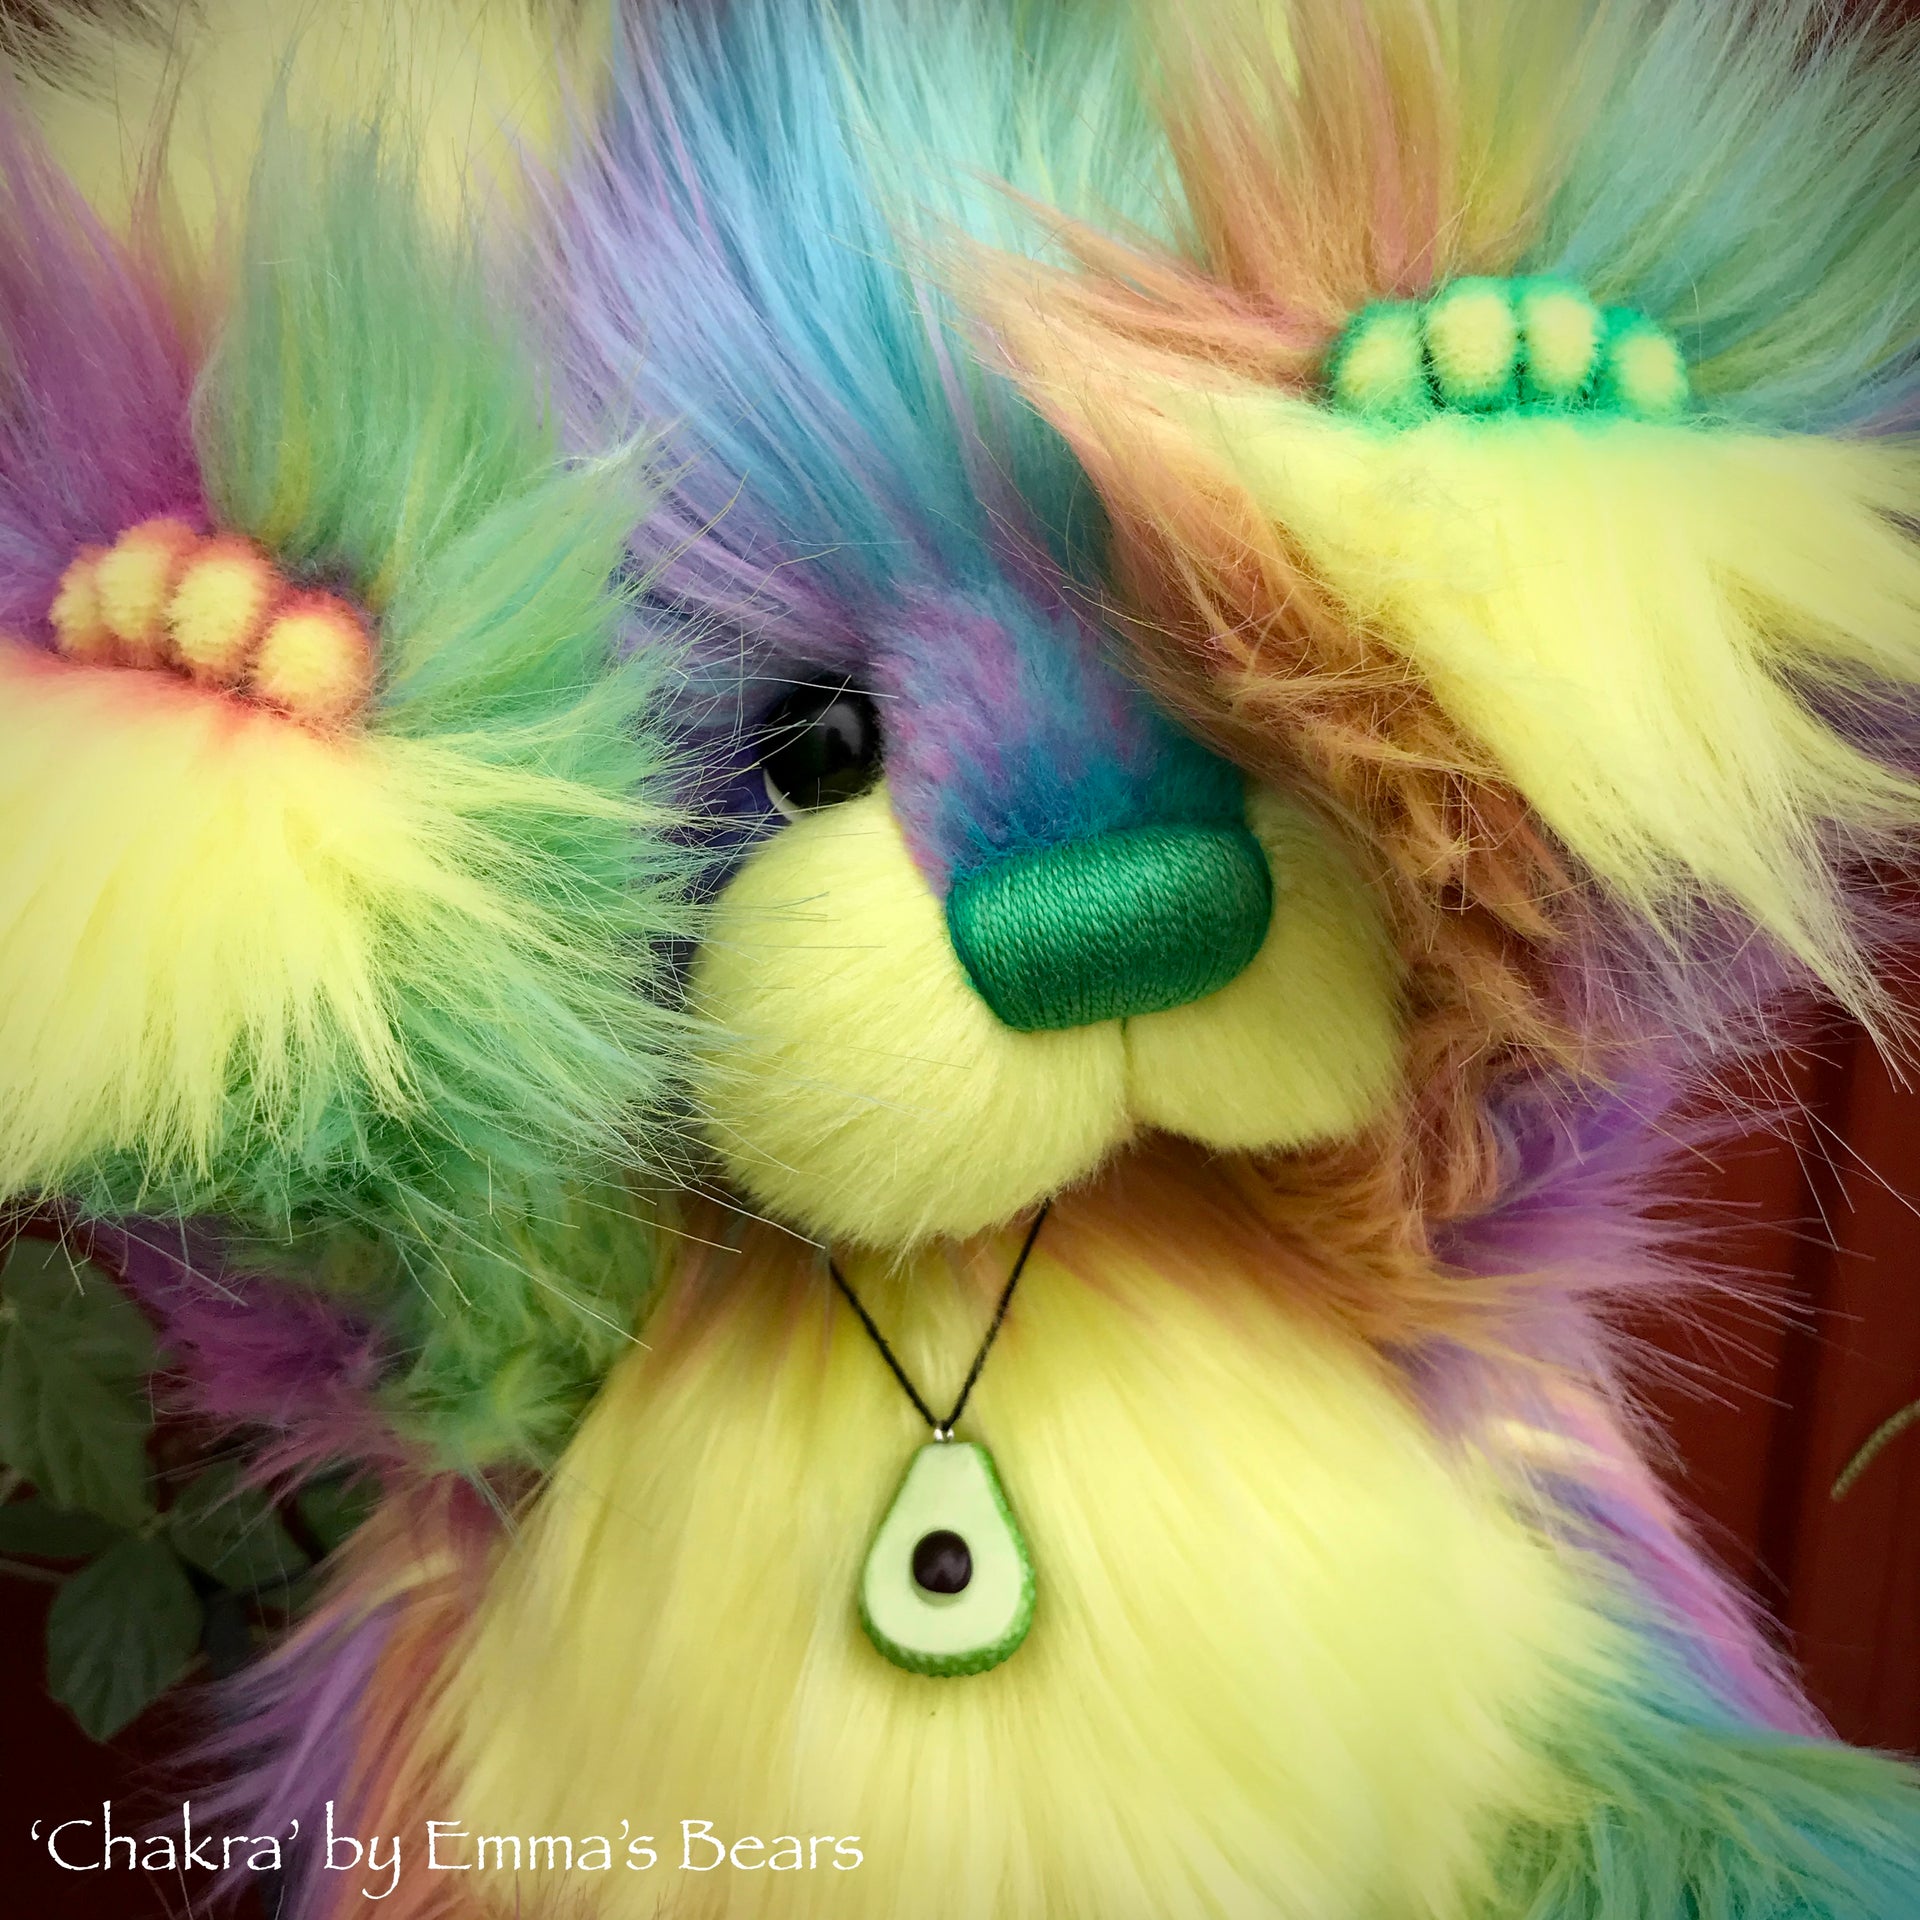 Chakra - 15" faux fur Artist Bear by Emma's Bears - OOAK